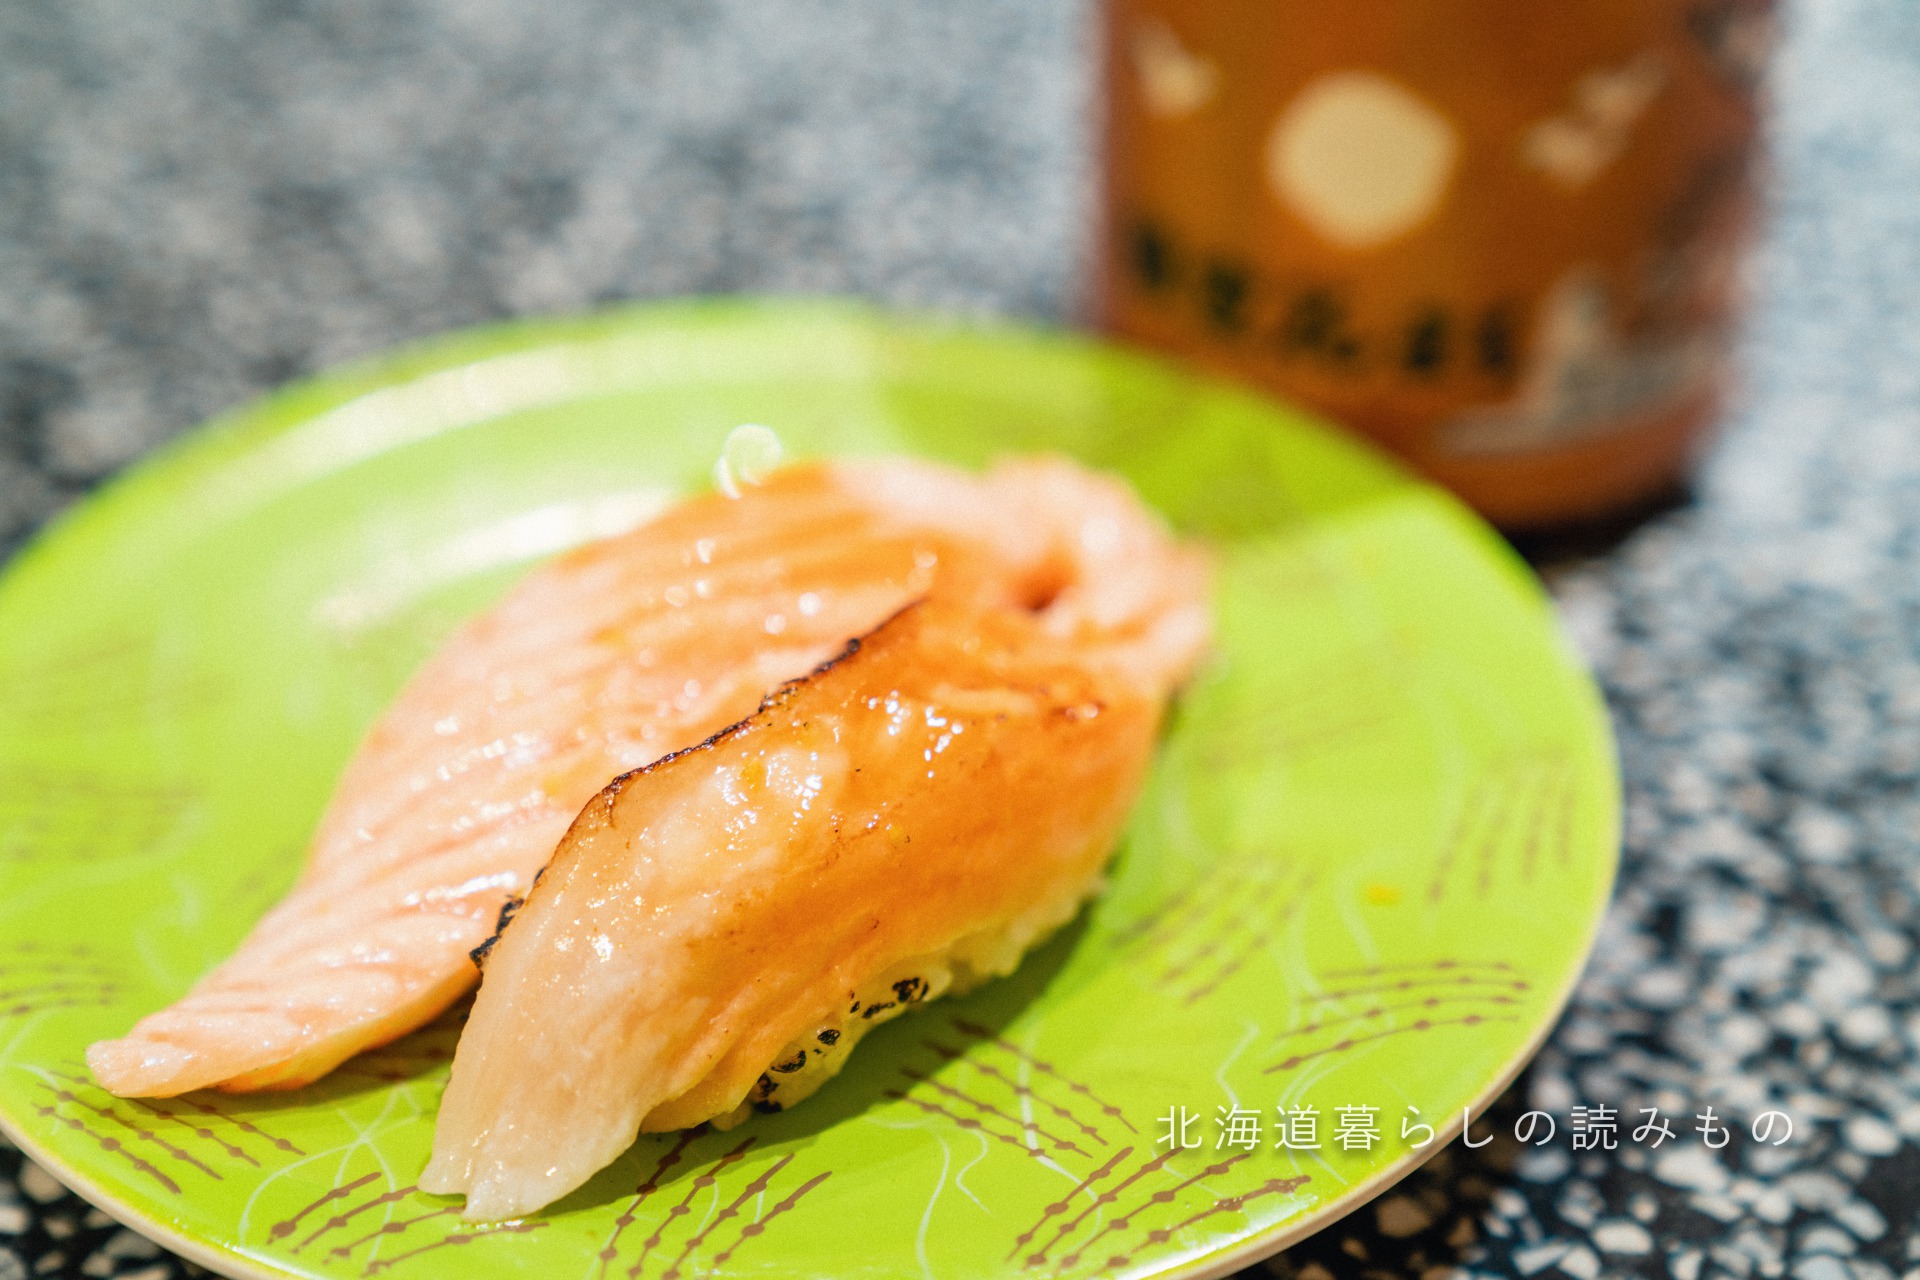 回転寿司 根室花まるのメニュー「炙りとろサーモン 焦し醤油握り」の写真